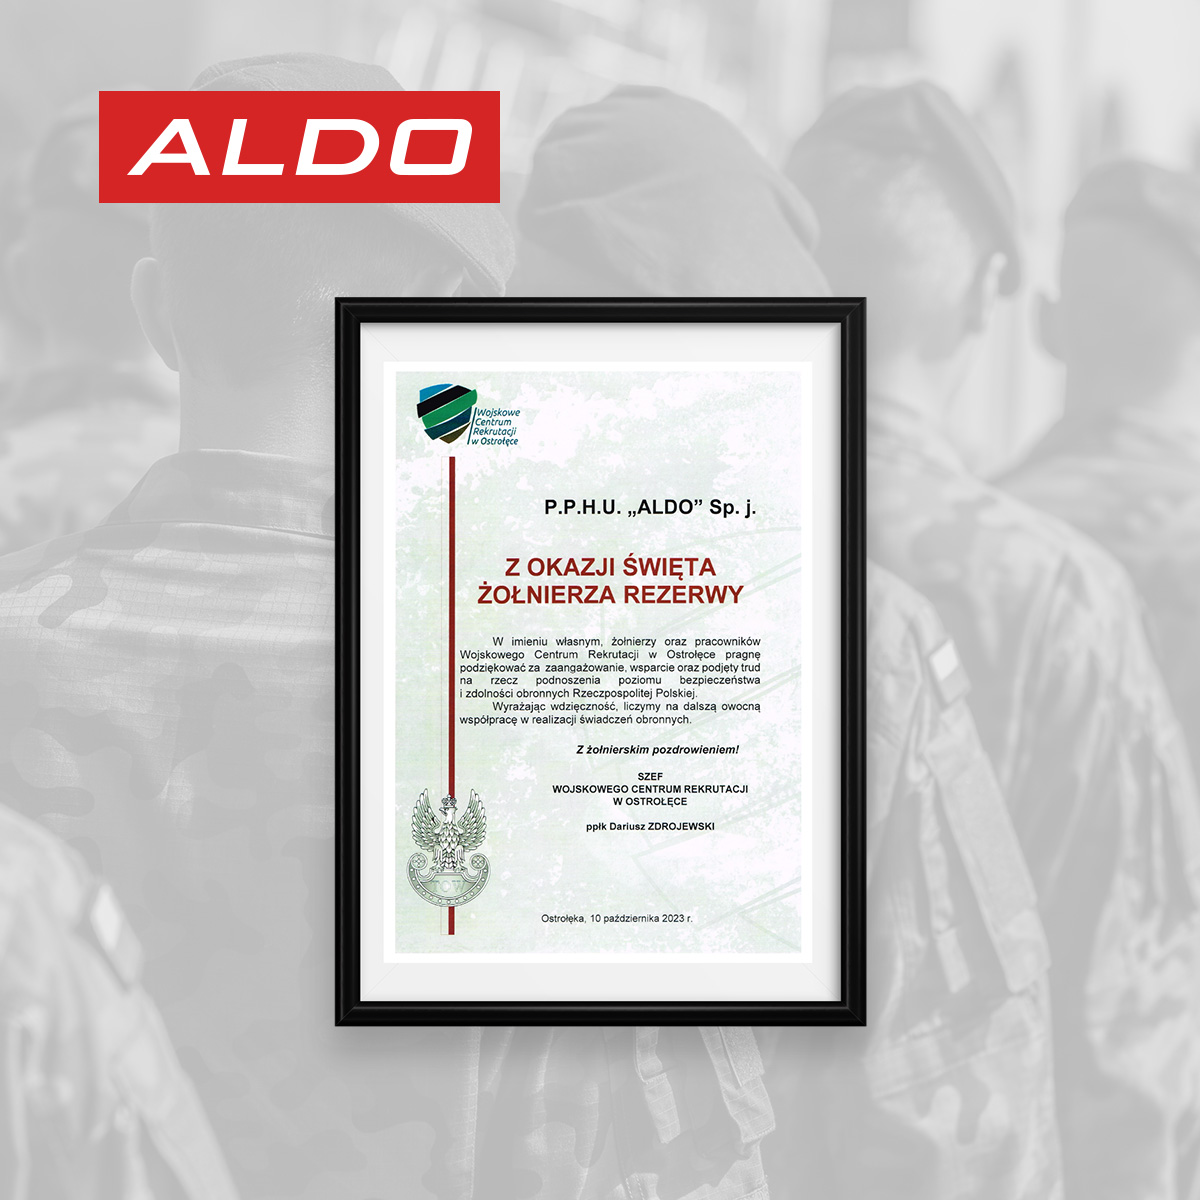 ALDO wspiera Wojskowe Centrum Rekrutacji w Ostrołęce